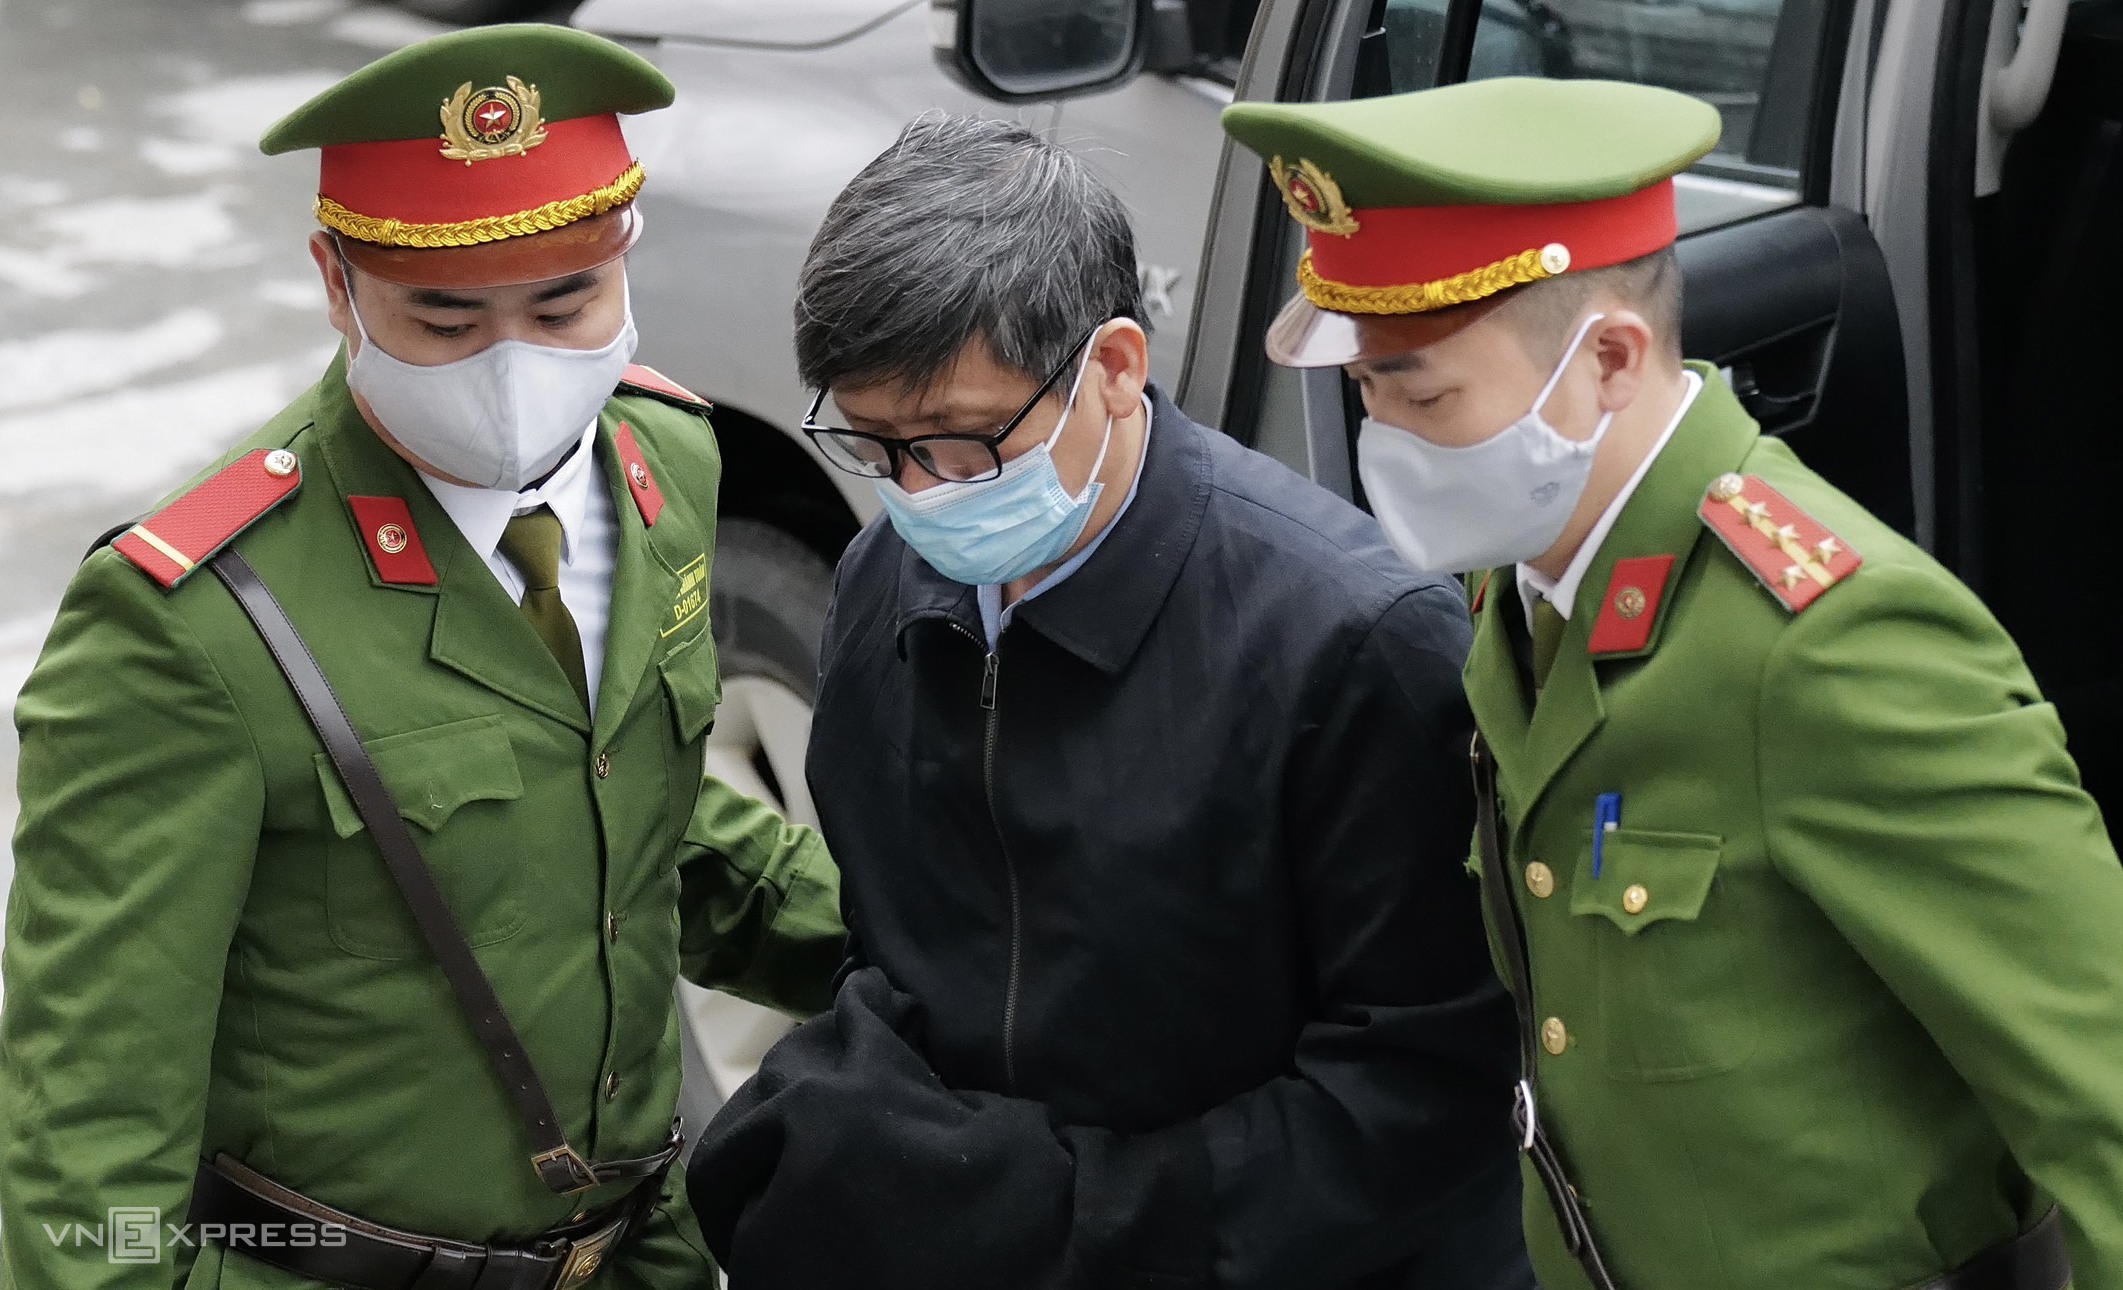 Cựu bộ trưởng Nguyễn Thanh Long trong lời sau cùng, xin giảm nhẹ cho các bác sĩ, cựu đồng nghiệp trong vụ án. Ảnh: Ngọc Thành